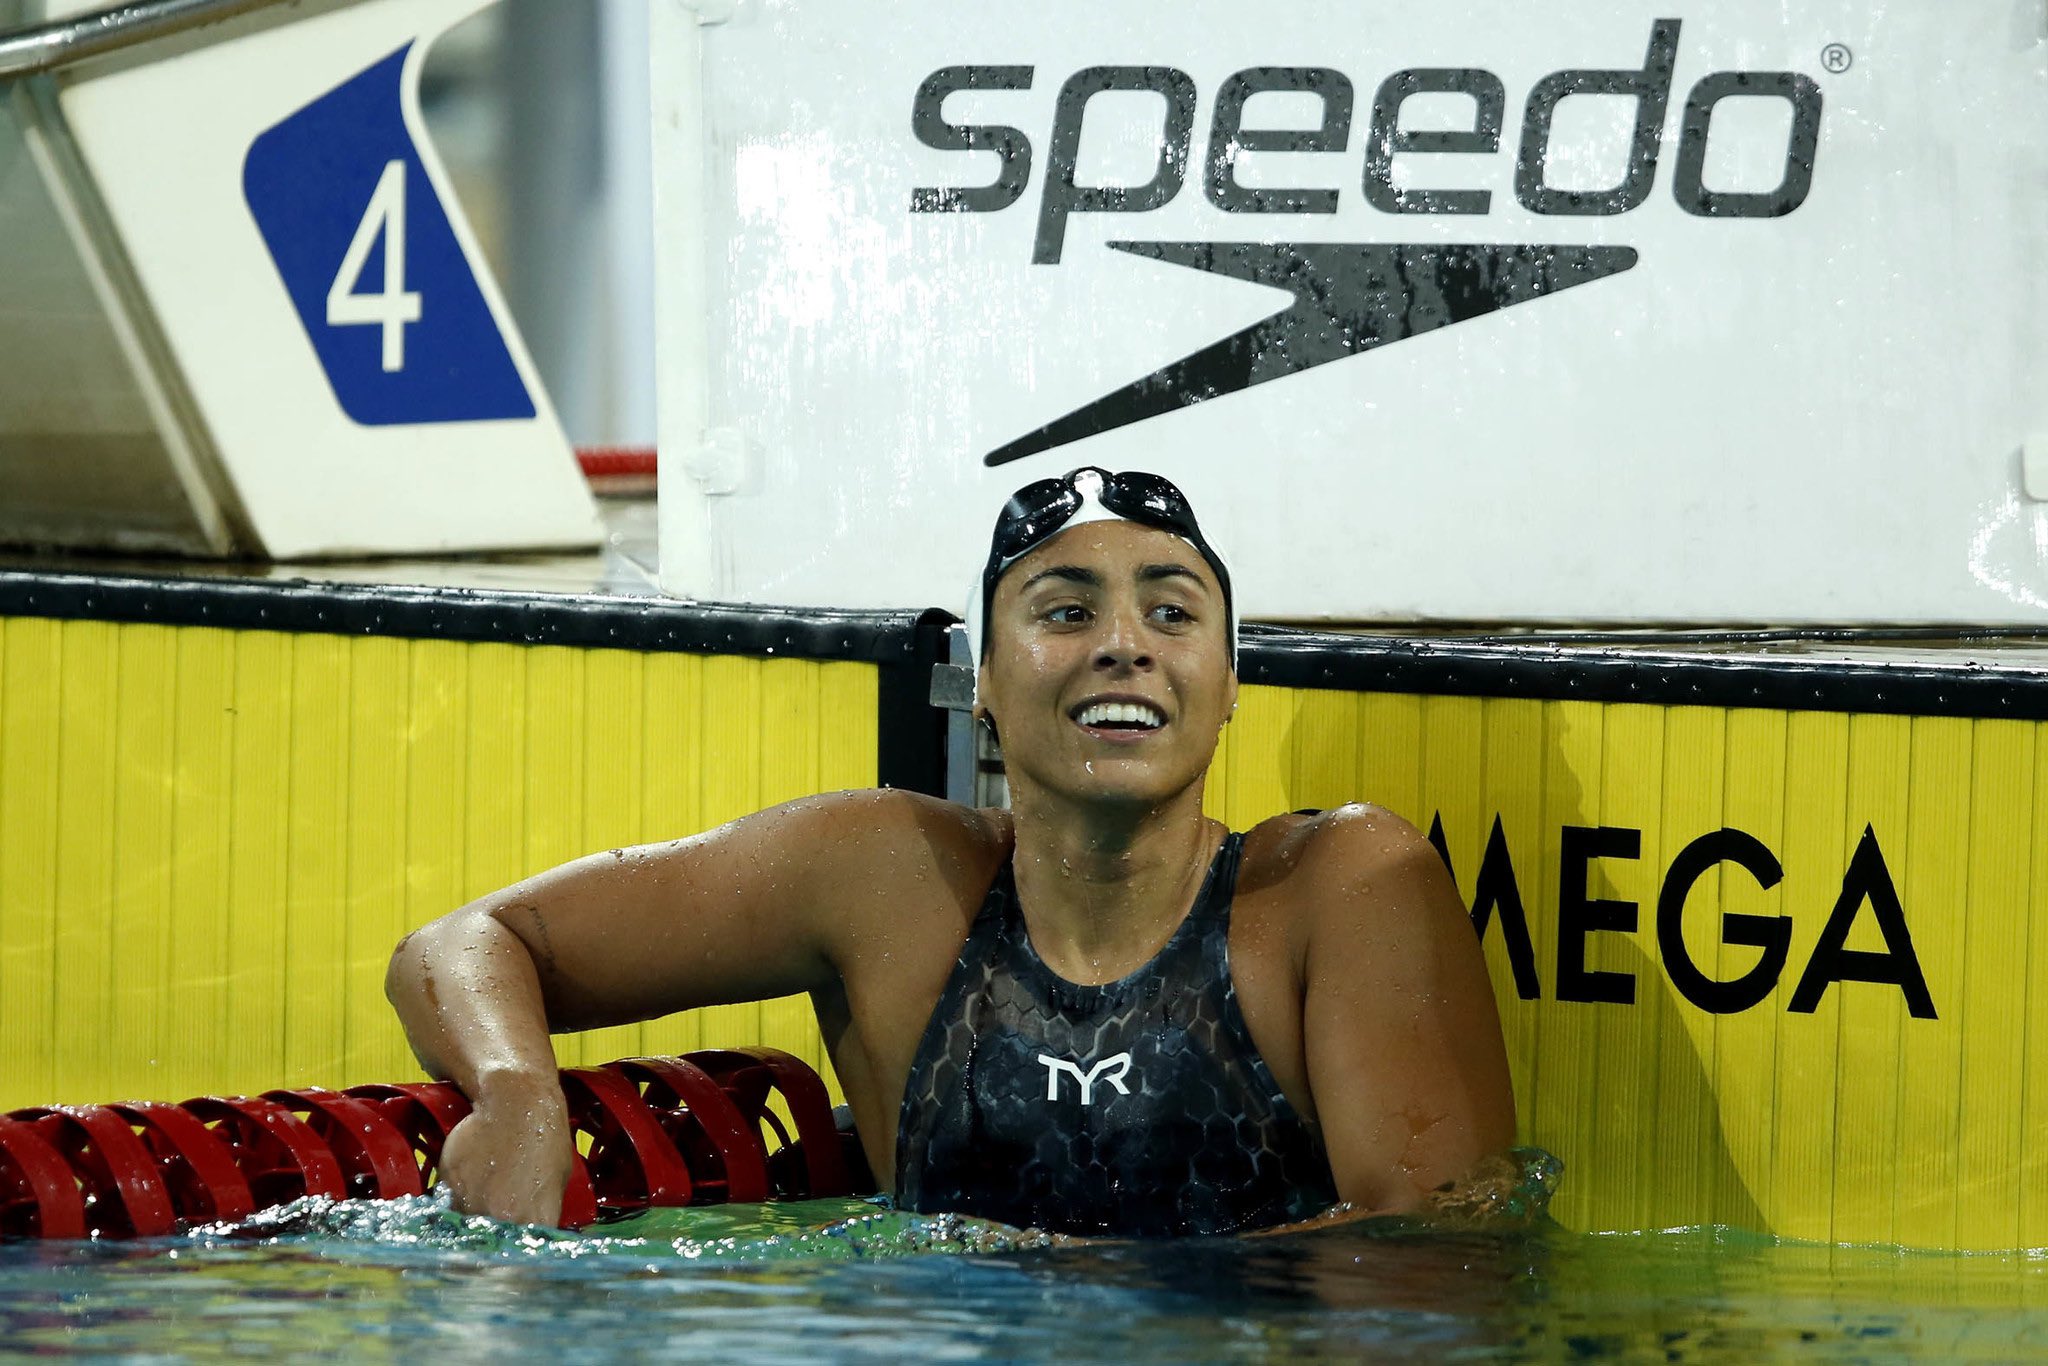 Naná ALmeida - Gabi Roncatto - Larissa Oliveira - Jogos Olímpicos de Tóquio - revezamento 4x200m livre feminino - Olimpíada Tóquio 2020